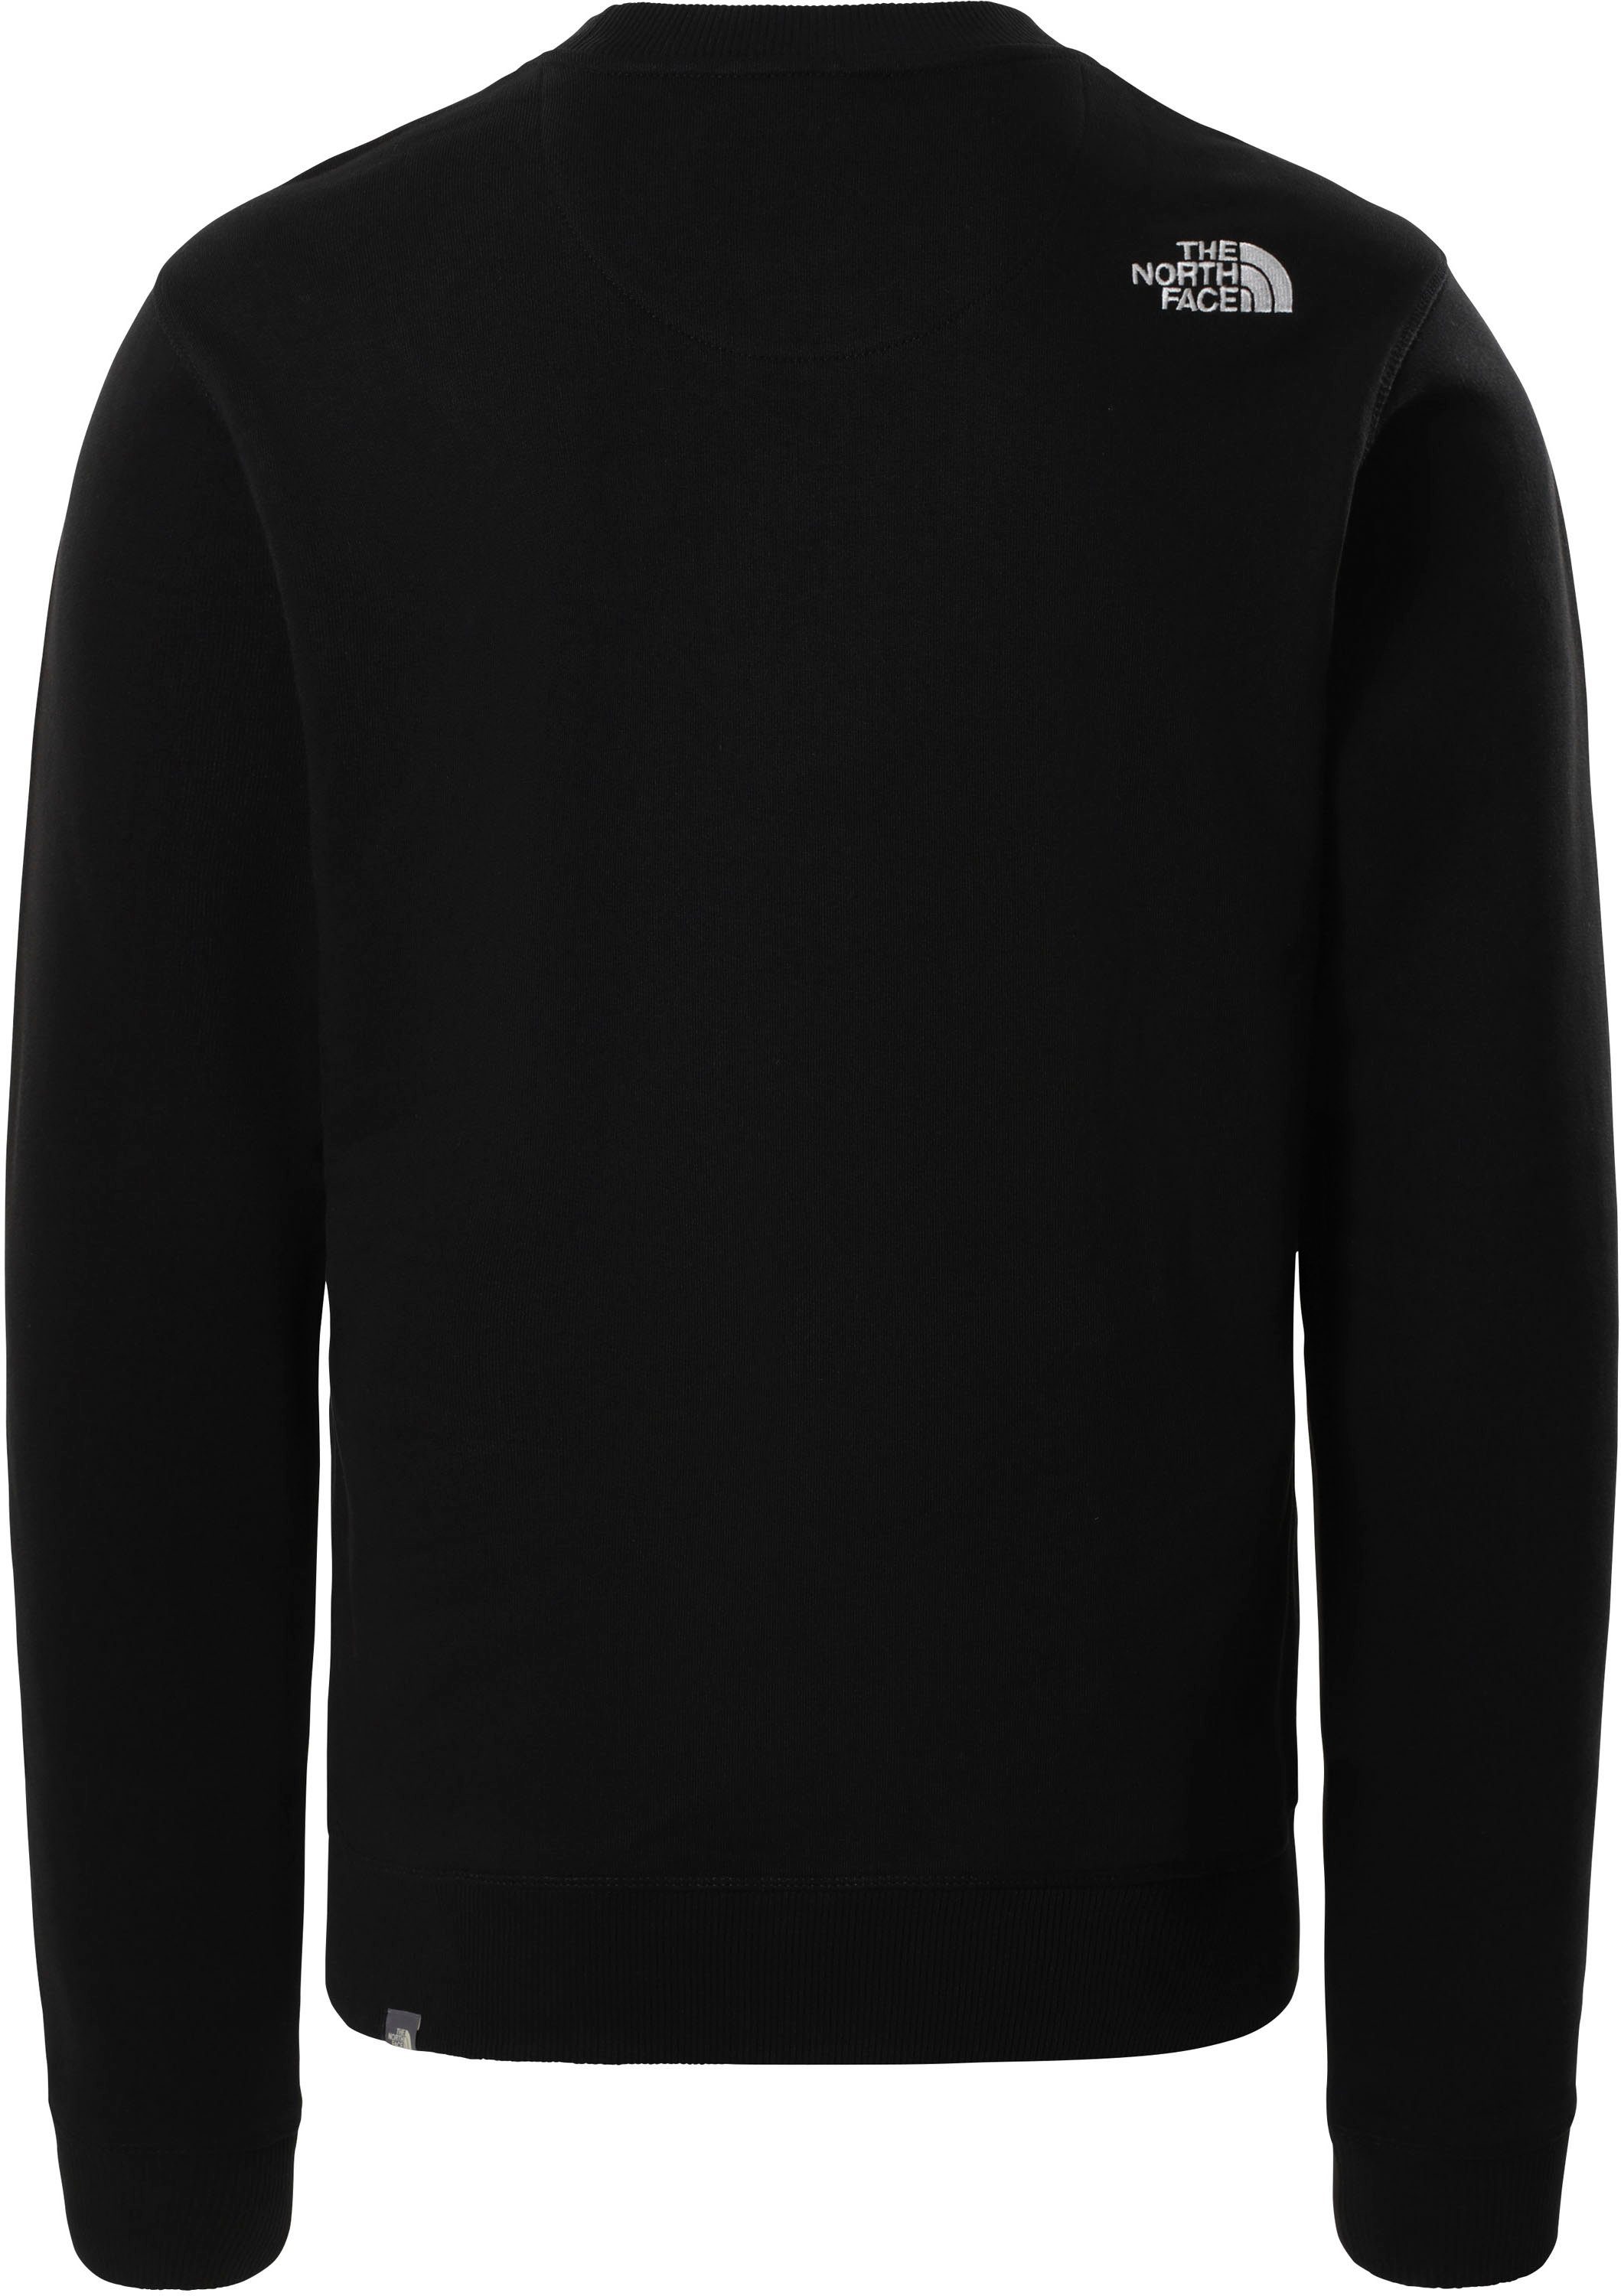 The North Face Sweatshirt schwarz PEAK DREW